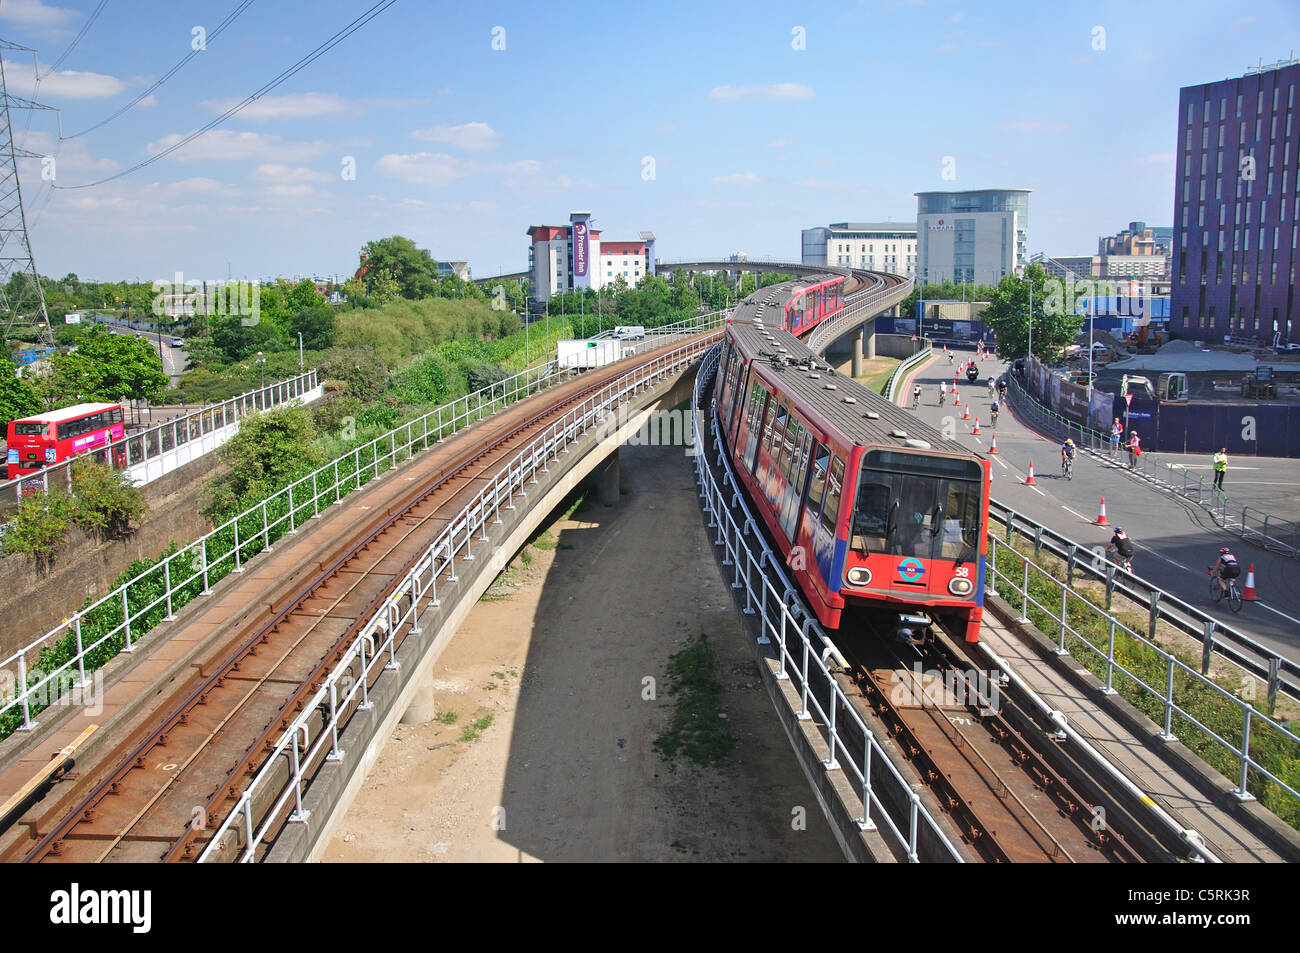 Trainieren Sie, Ankunft am Prinzregent DLR Station, London Borough of Newham, London, Greater London, England, Vereinigtes Königreich Stockfoto